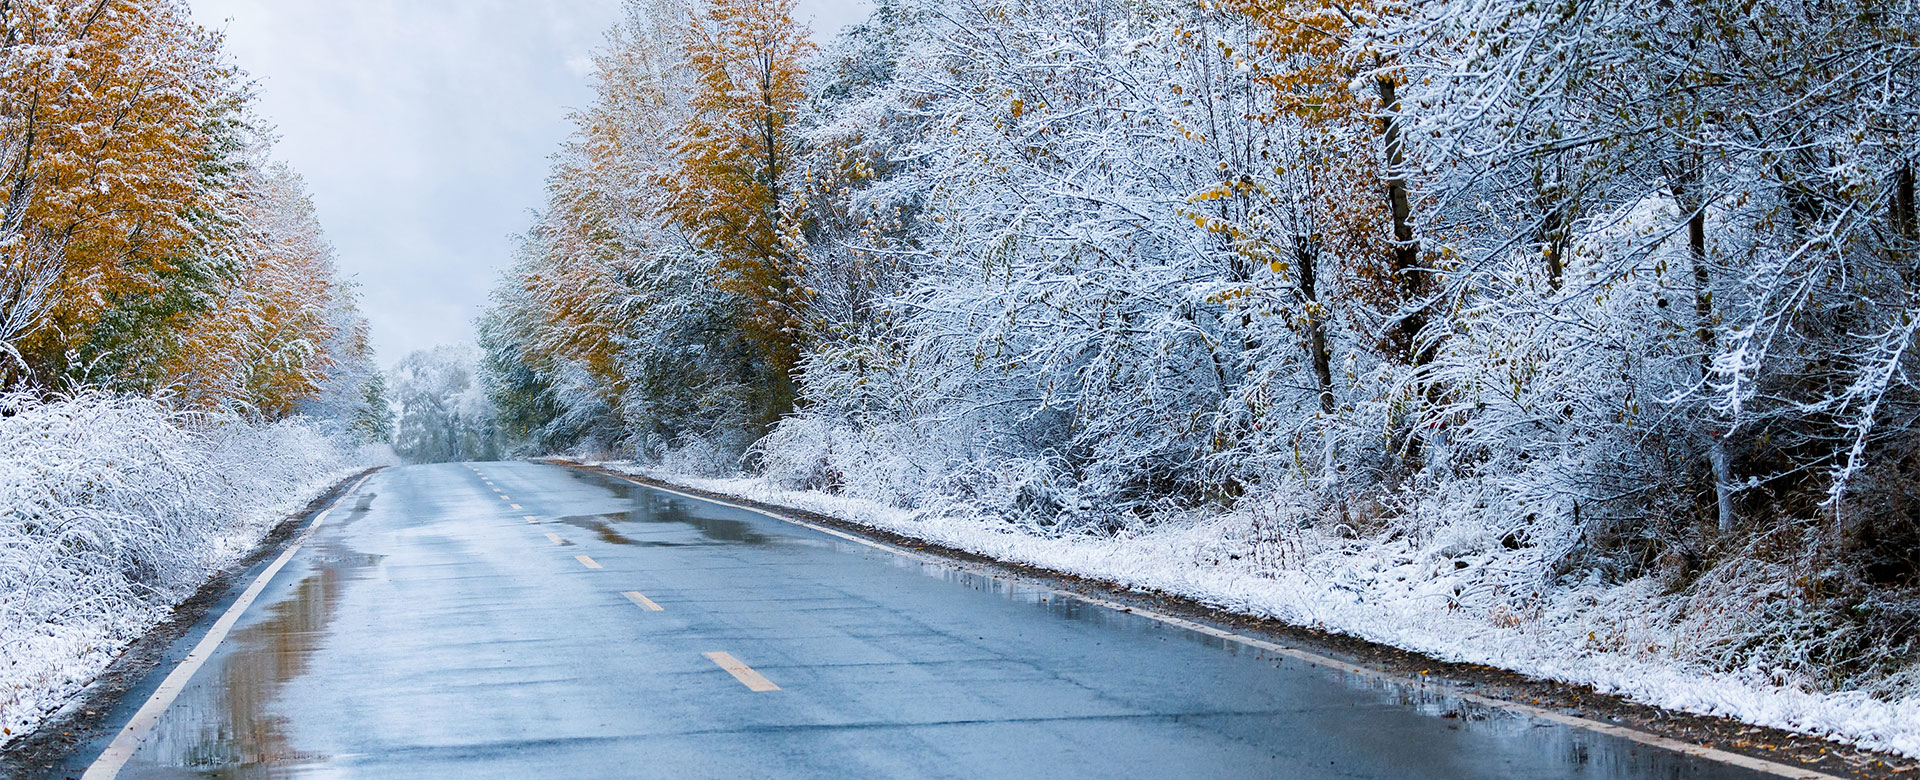 Veilig rijden bij glad weer en andere weersomstandigheden